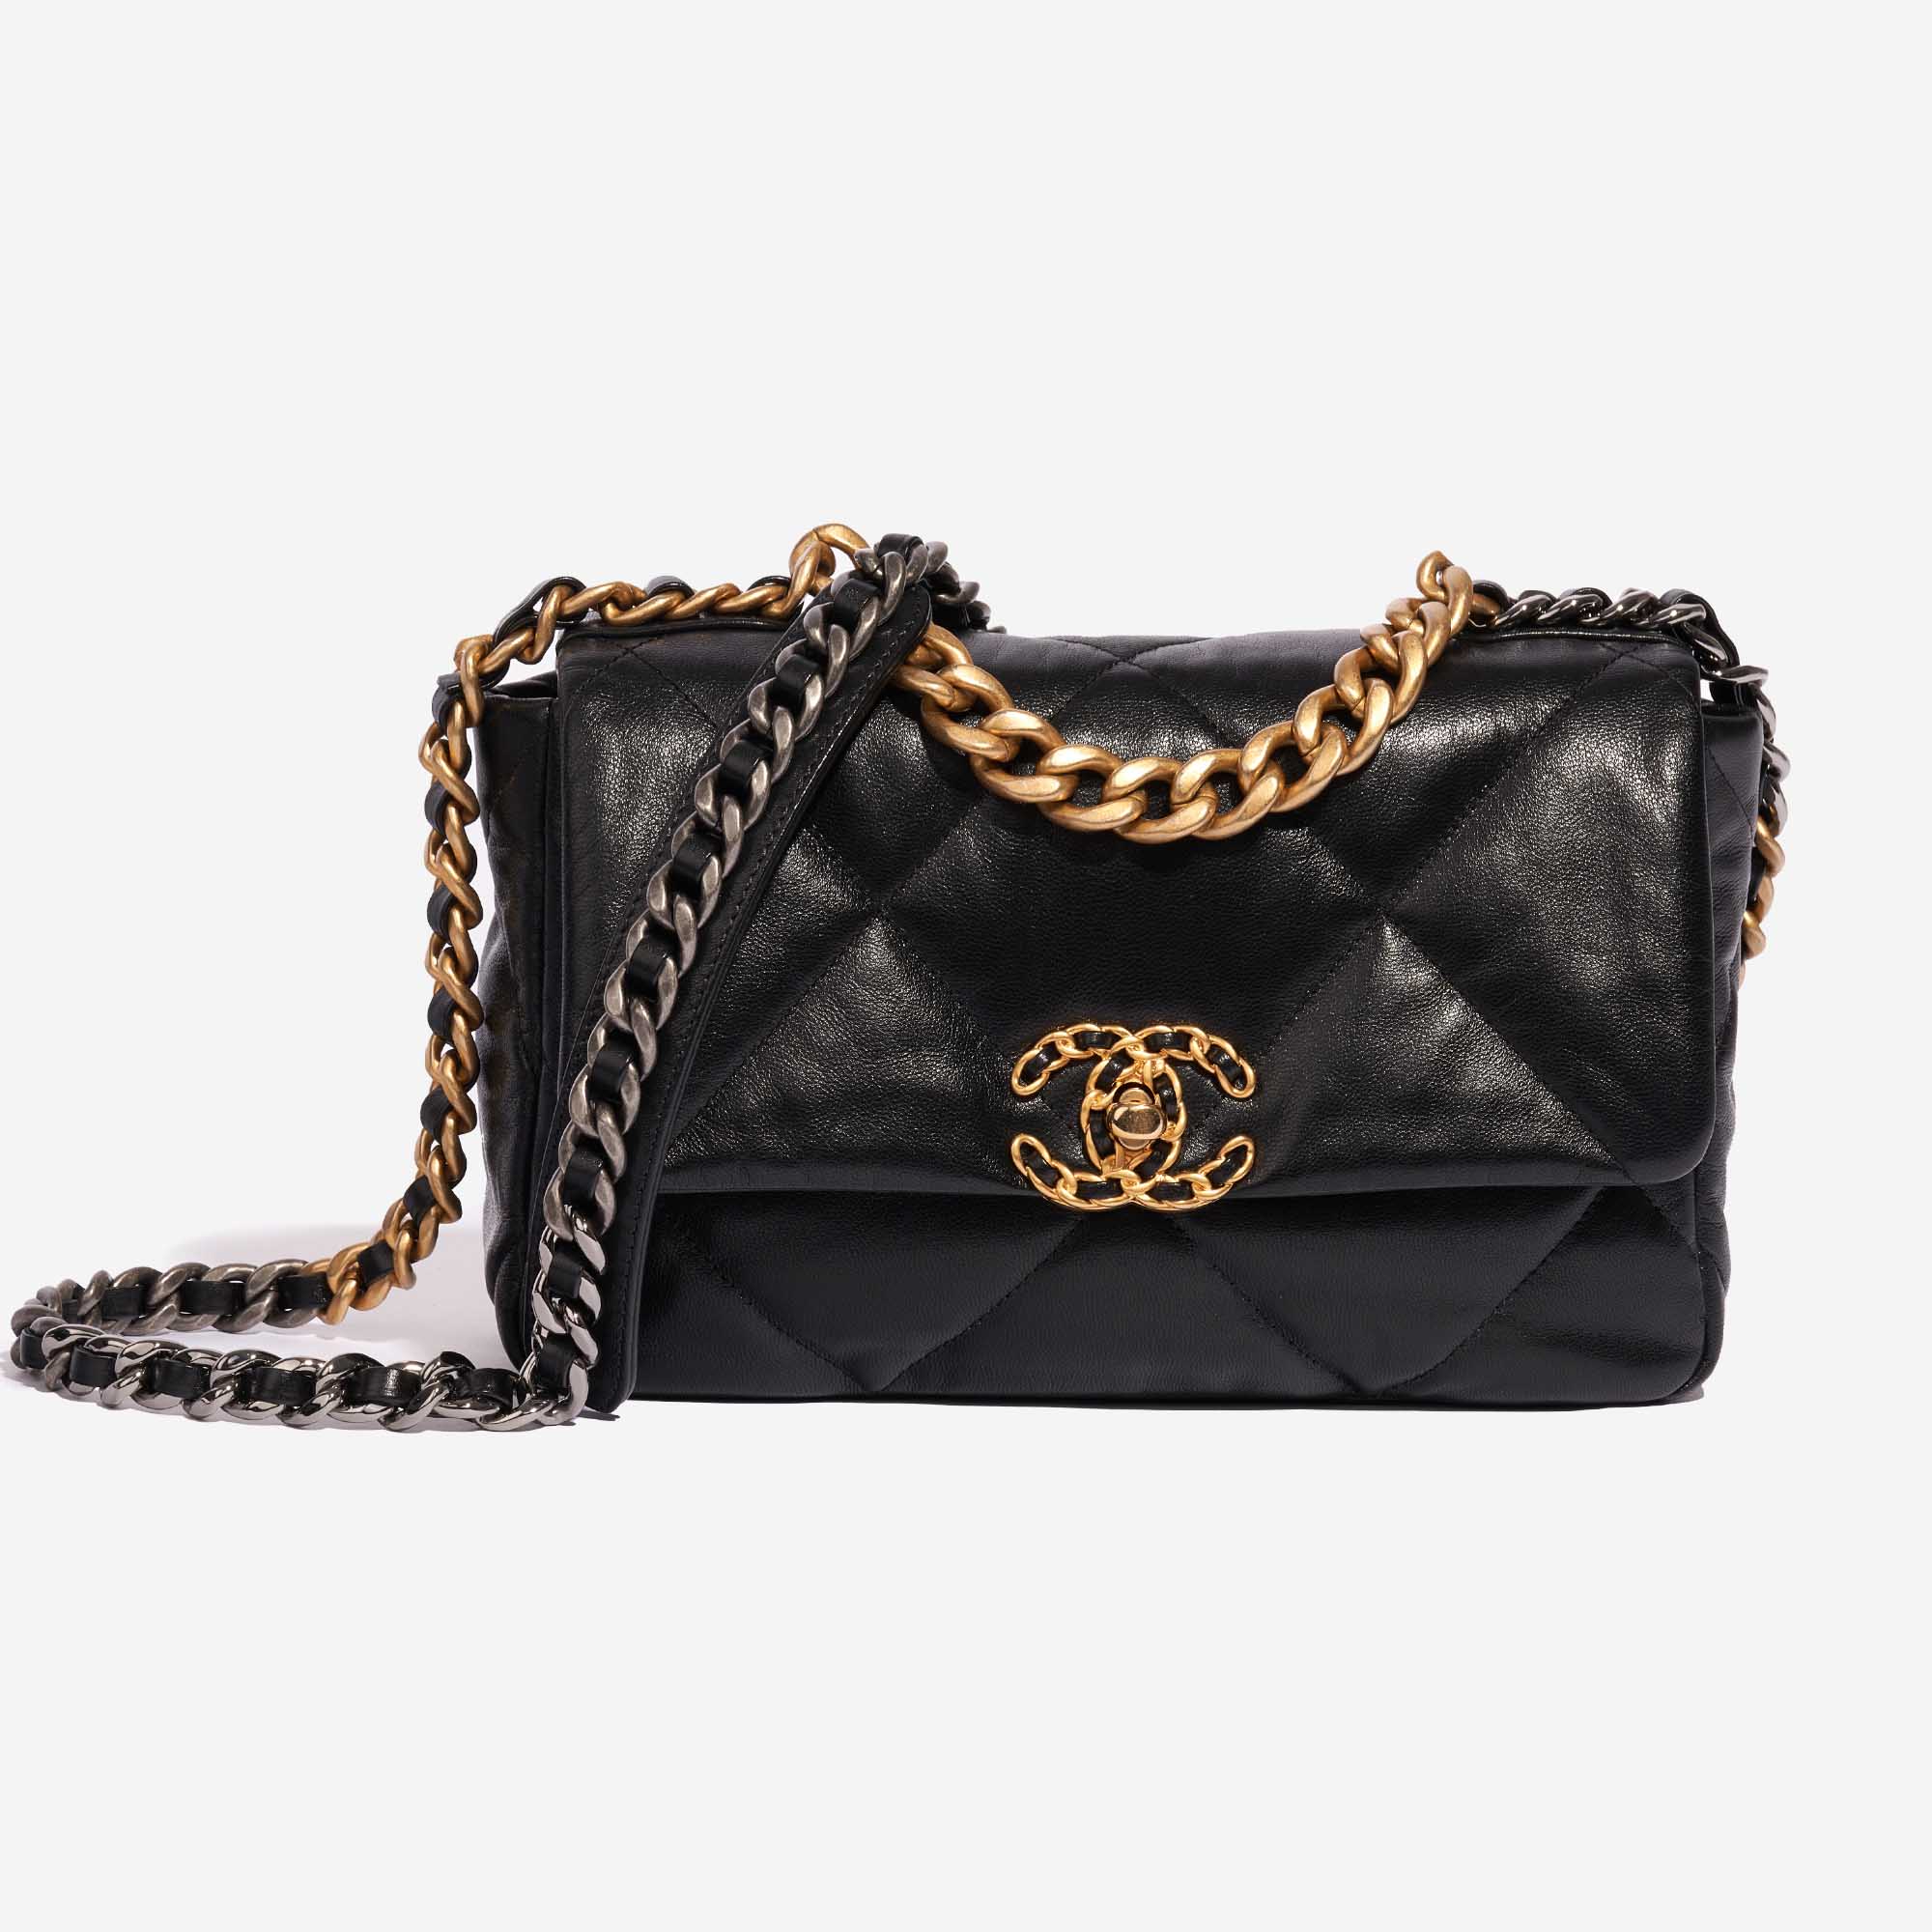 Pre-owned Chanel bag 19 Flap Bag Lamb Black Black Front | Sell your designer bag on Saclab.com